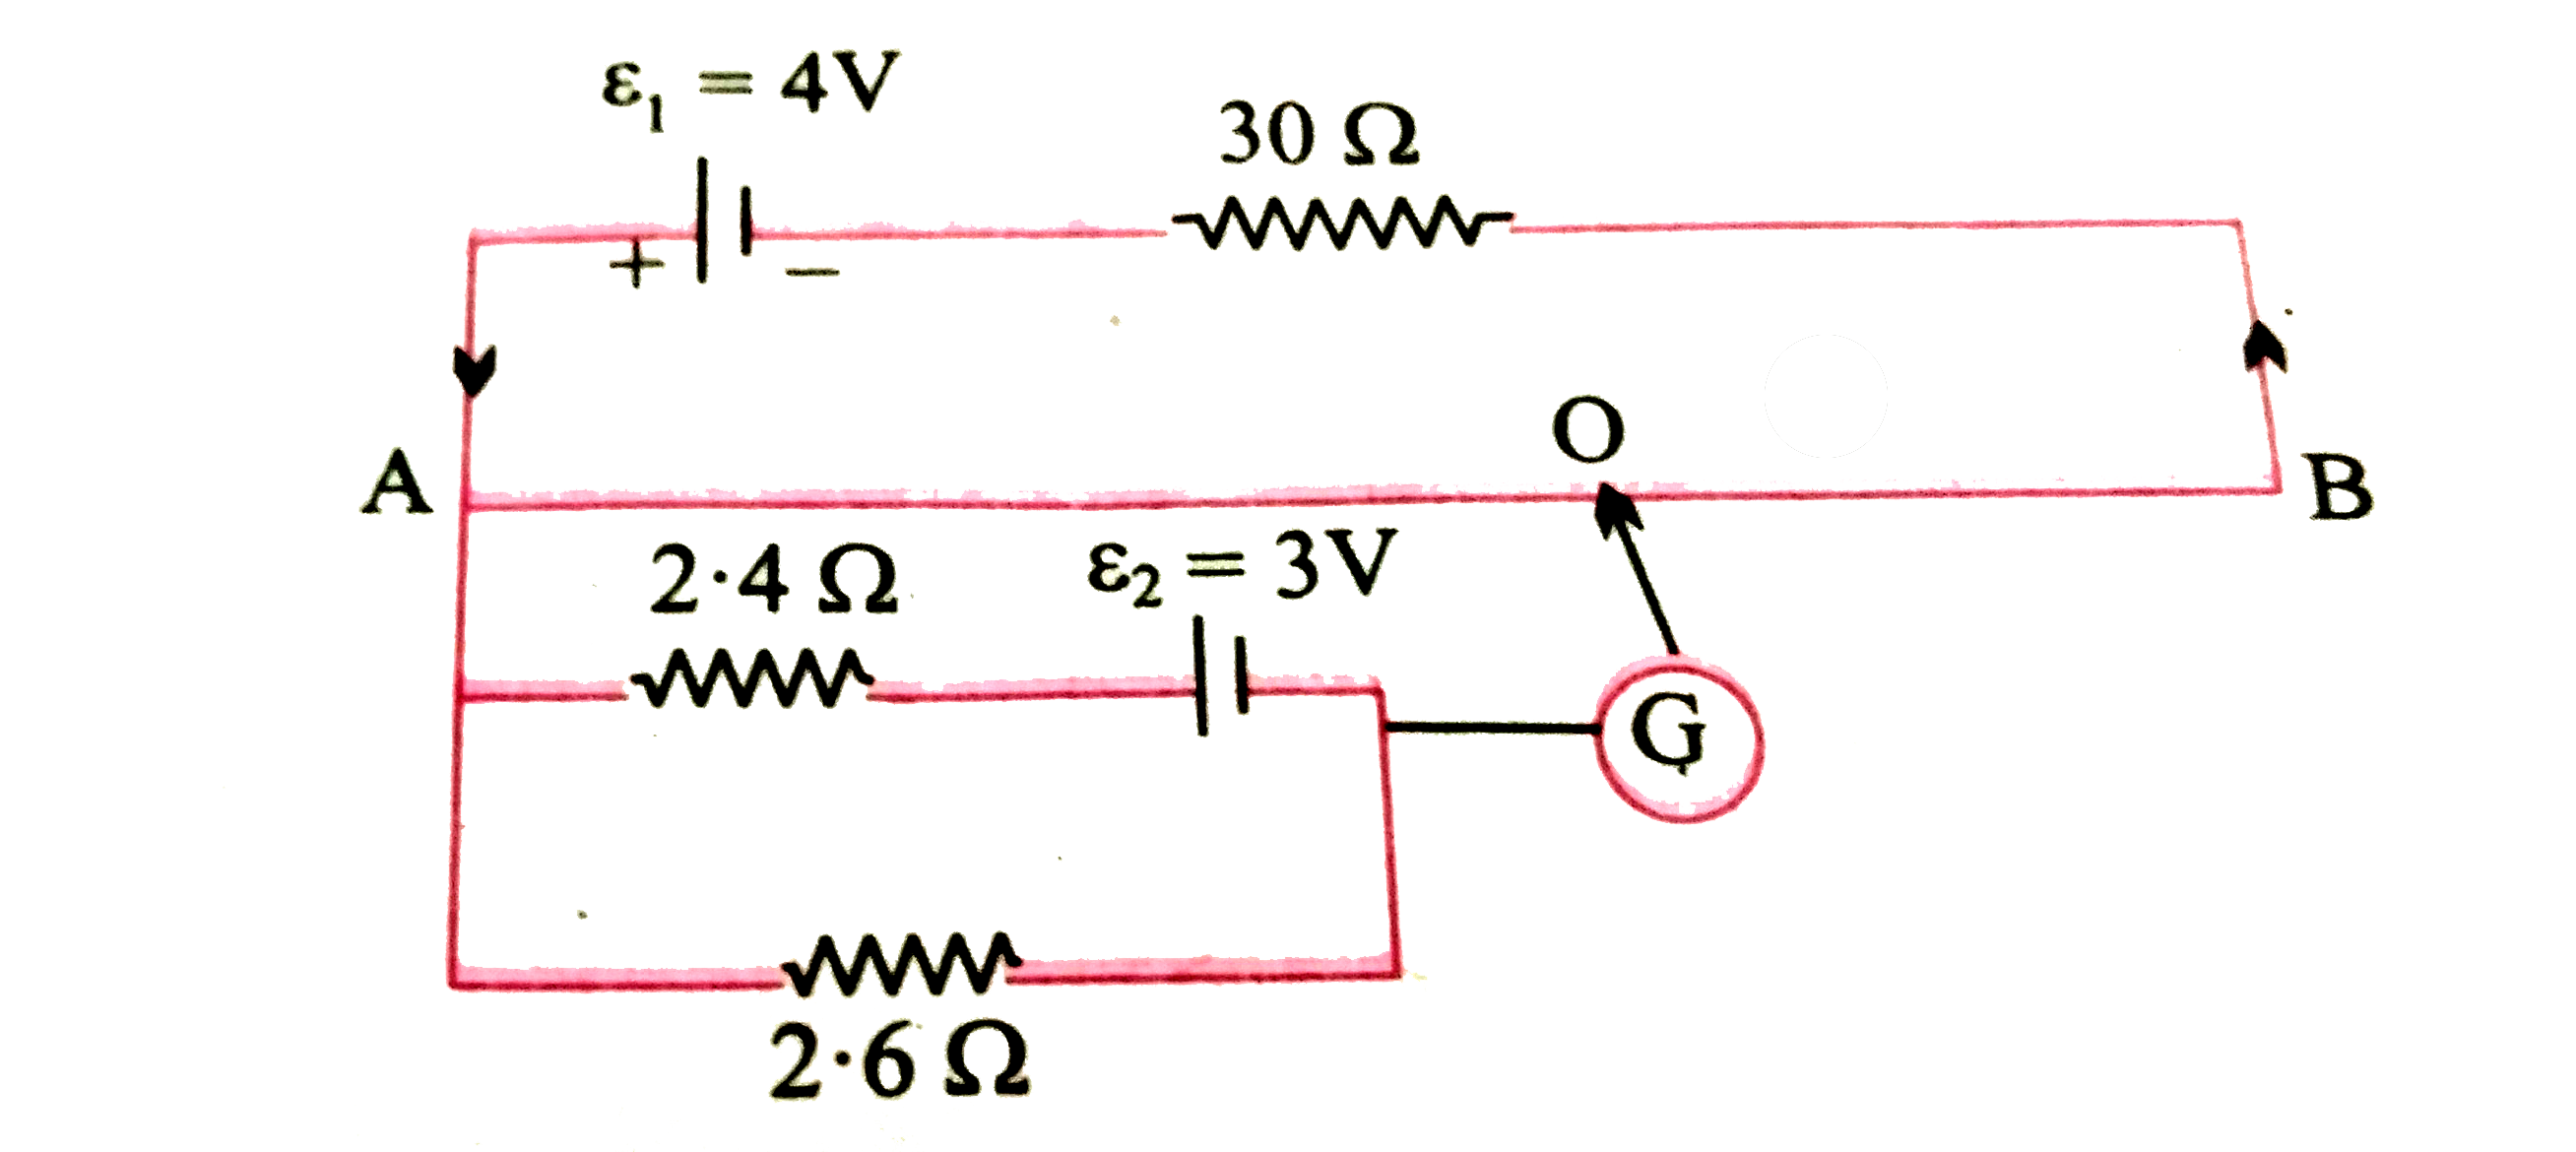 AB एकसमान  परिच्छेद  वाला 2  मीटर  लम्बा  तार है  जिसका  प्रतिरोध 20 ओम है  । अन्य आकड़े  नीचे दिए  गए रेखाचित्र  में अंकित है -       गणना  कीजिए -   तार AO  की लम्बाई  , जब धारामापी  में कोई विक्षेप  नहीं होता ।